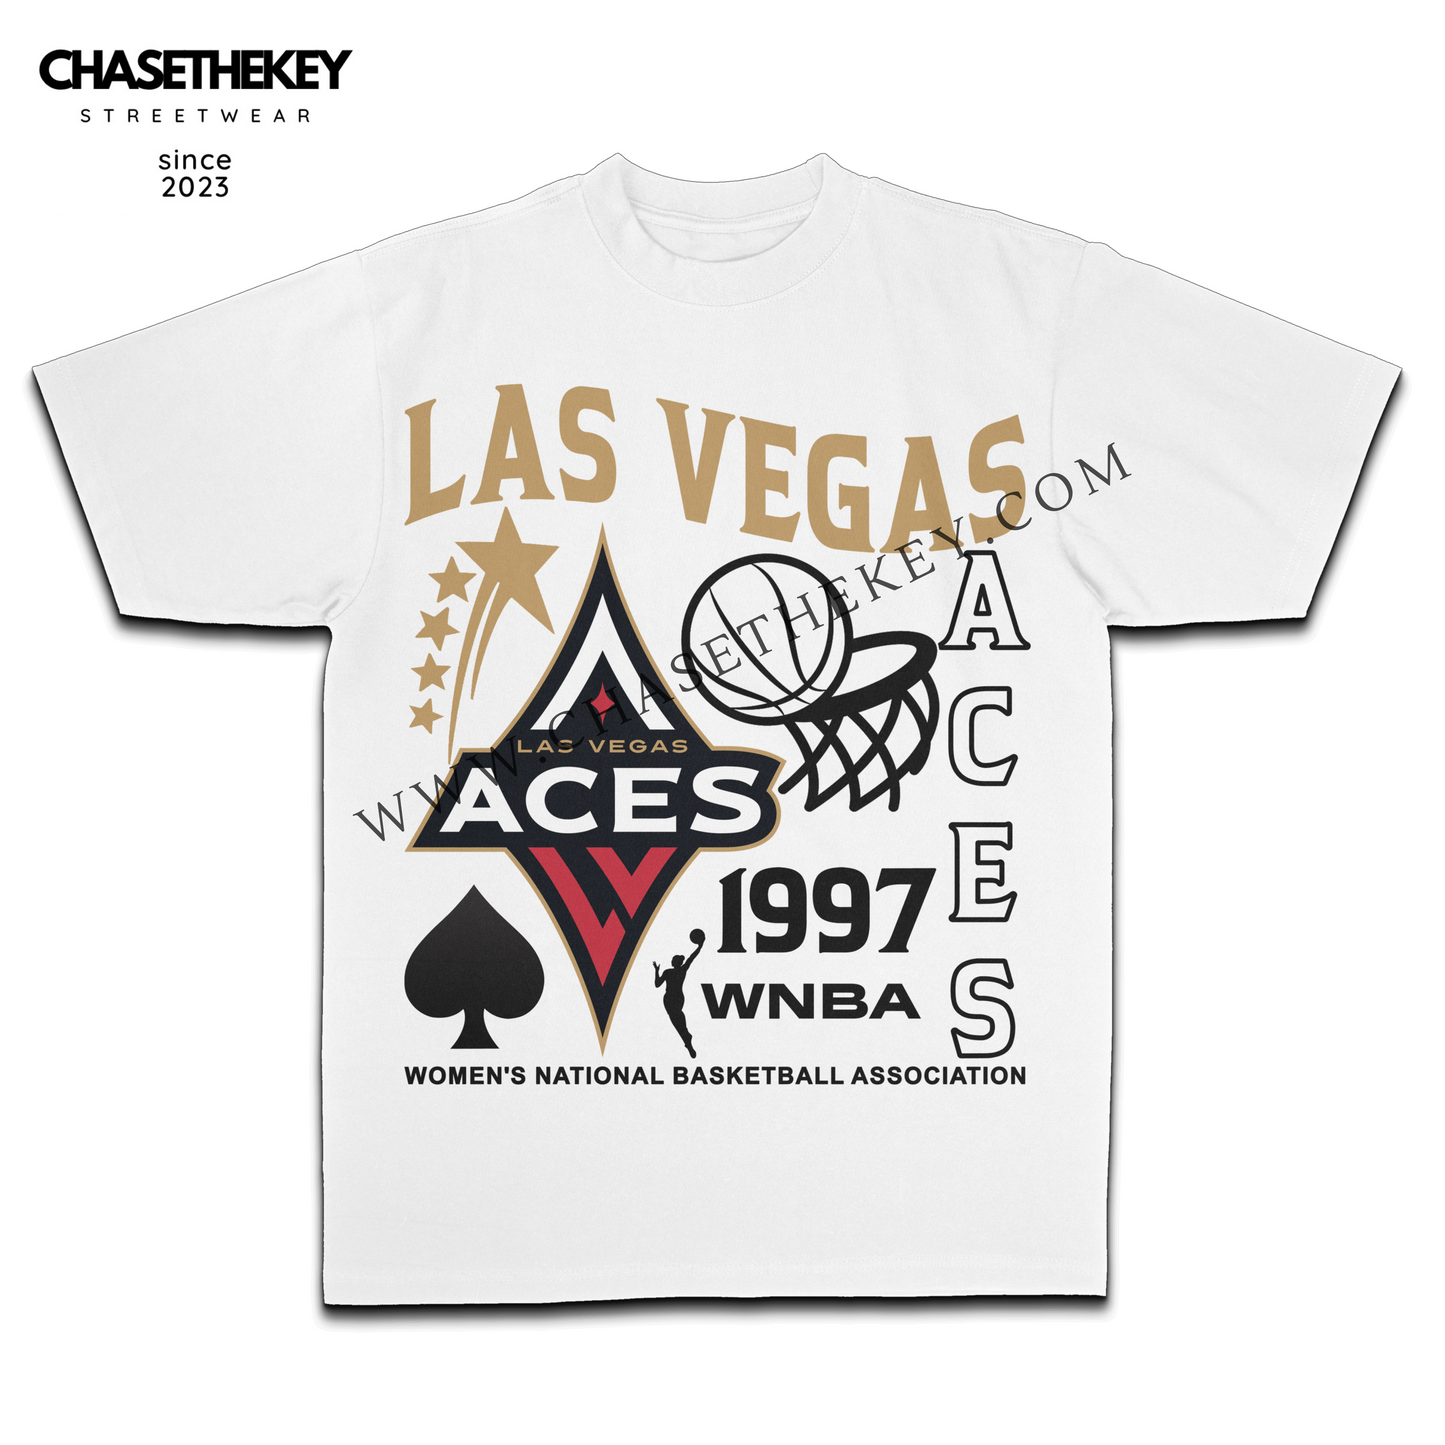 Las Vegas Aces T-Shirt